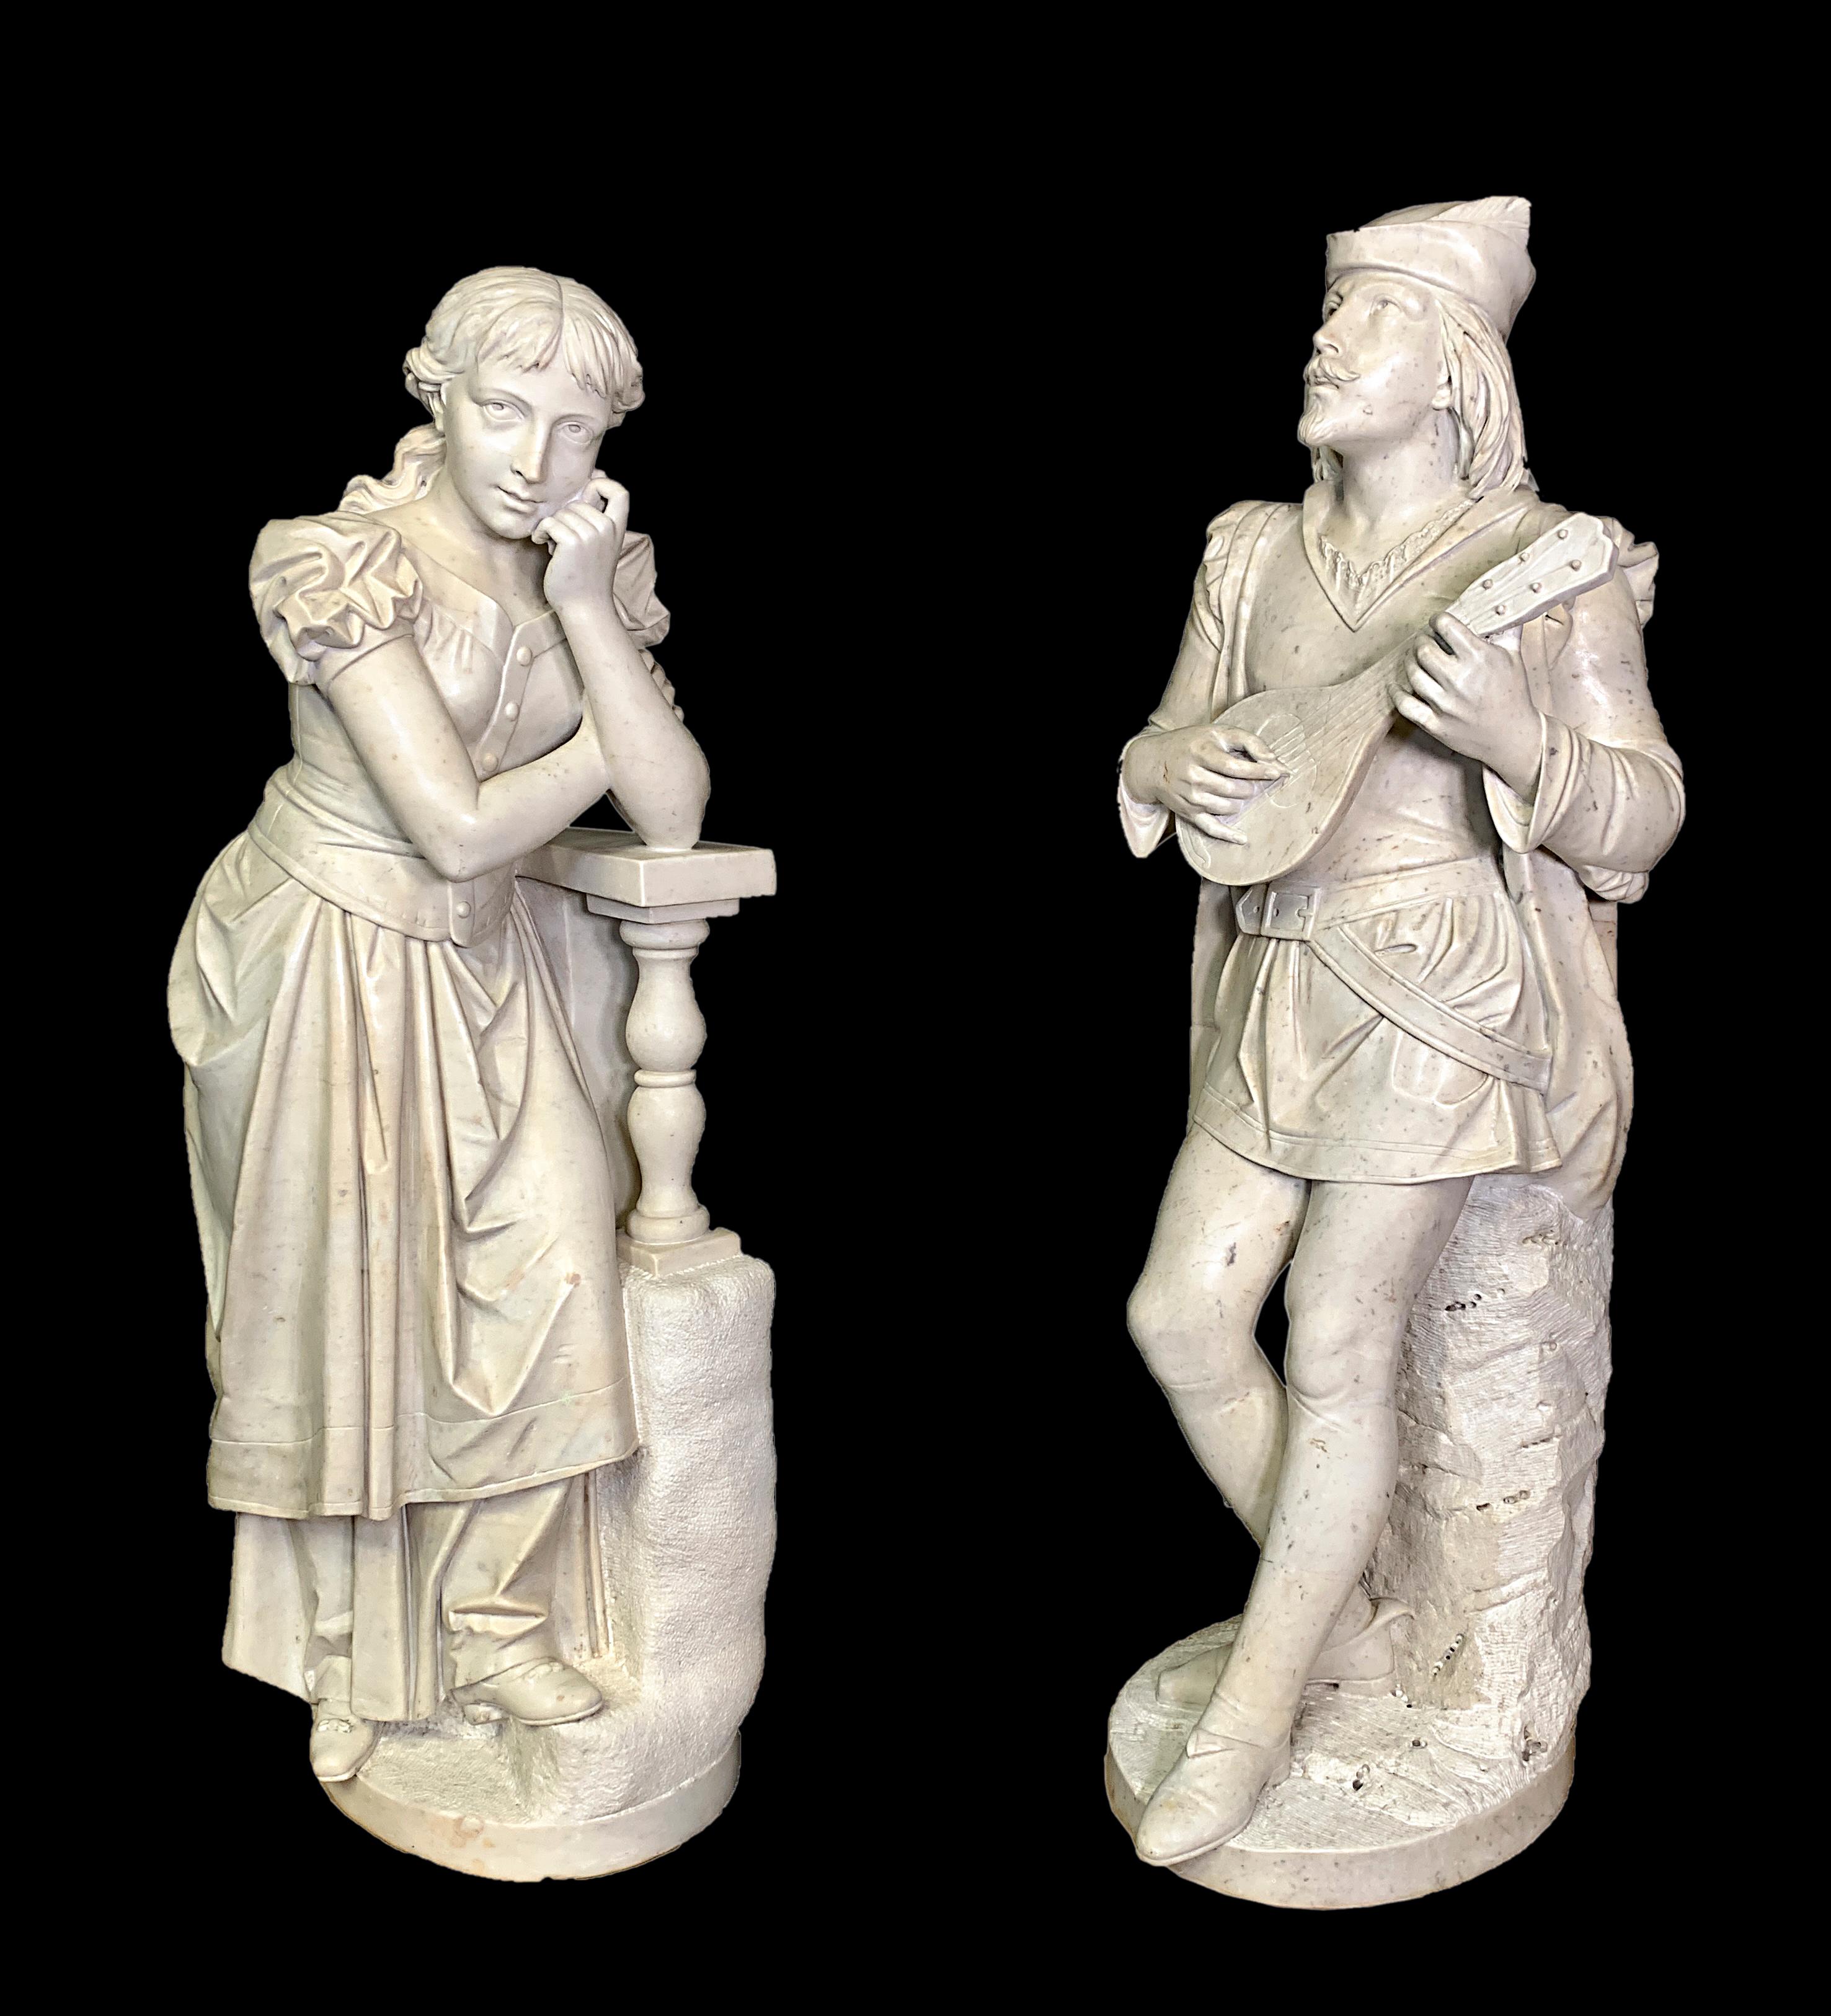 Cette magnifique paire de figurines italiennes anciennes en marbre sculpté à la main, grandeur nature, représente Roméo et Juliette, les jeunes amoureux de la célèbre pièce de William Shakespeare. 

L'une des figures montre un homme amoureux qui